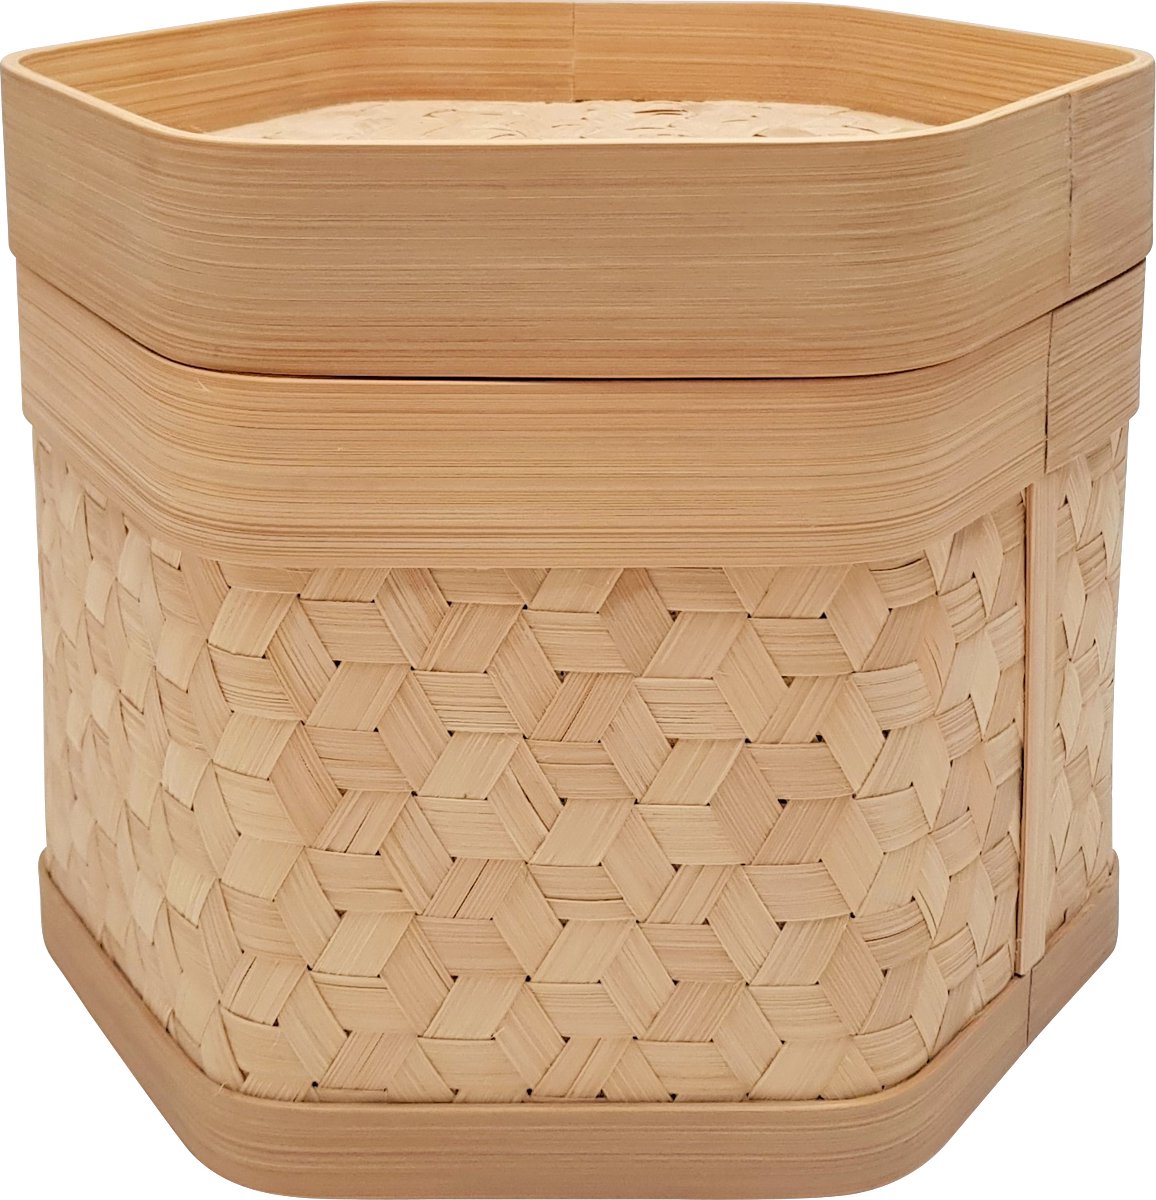 Zeshoek Bamboe Voorraadpot Hexagonal Bamboo Container